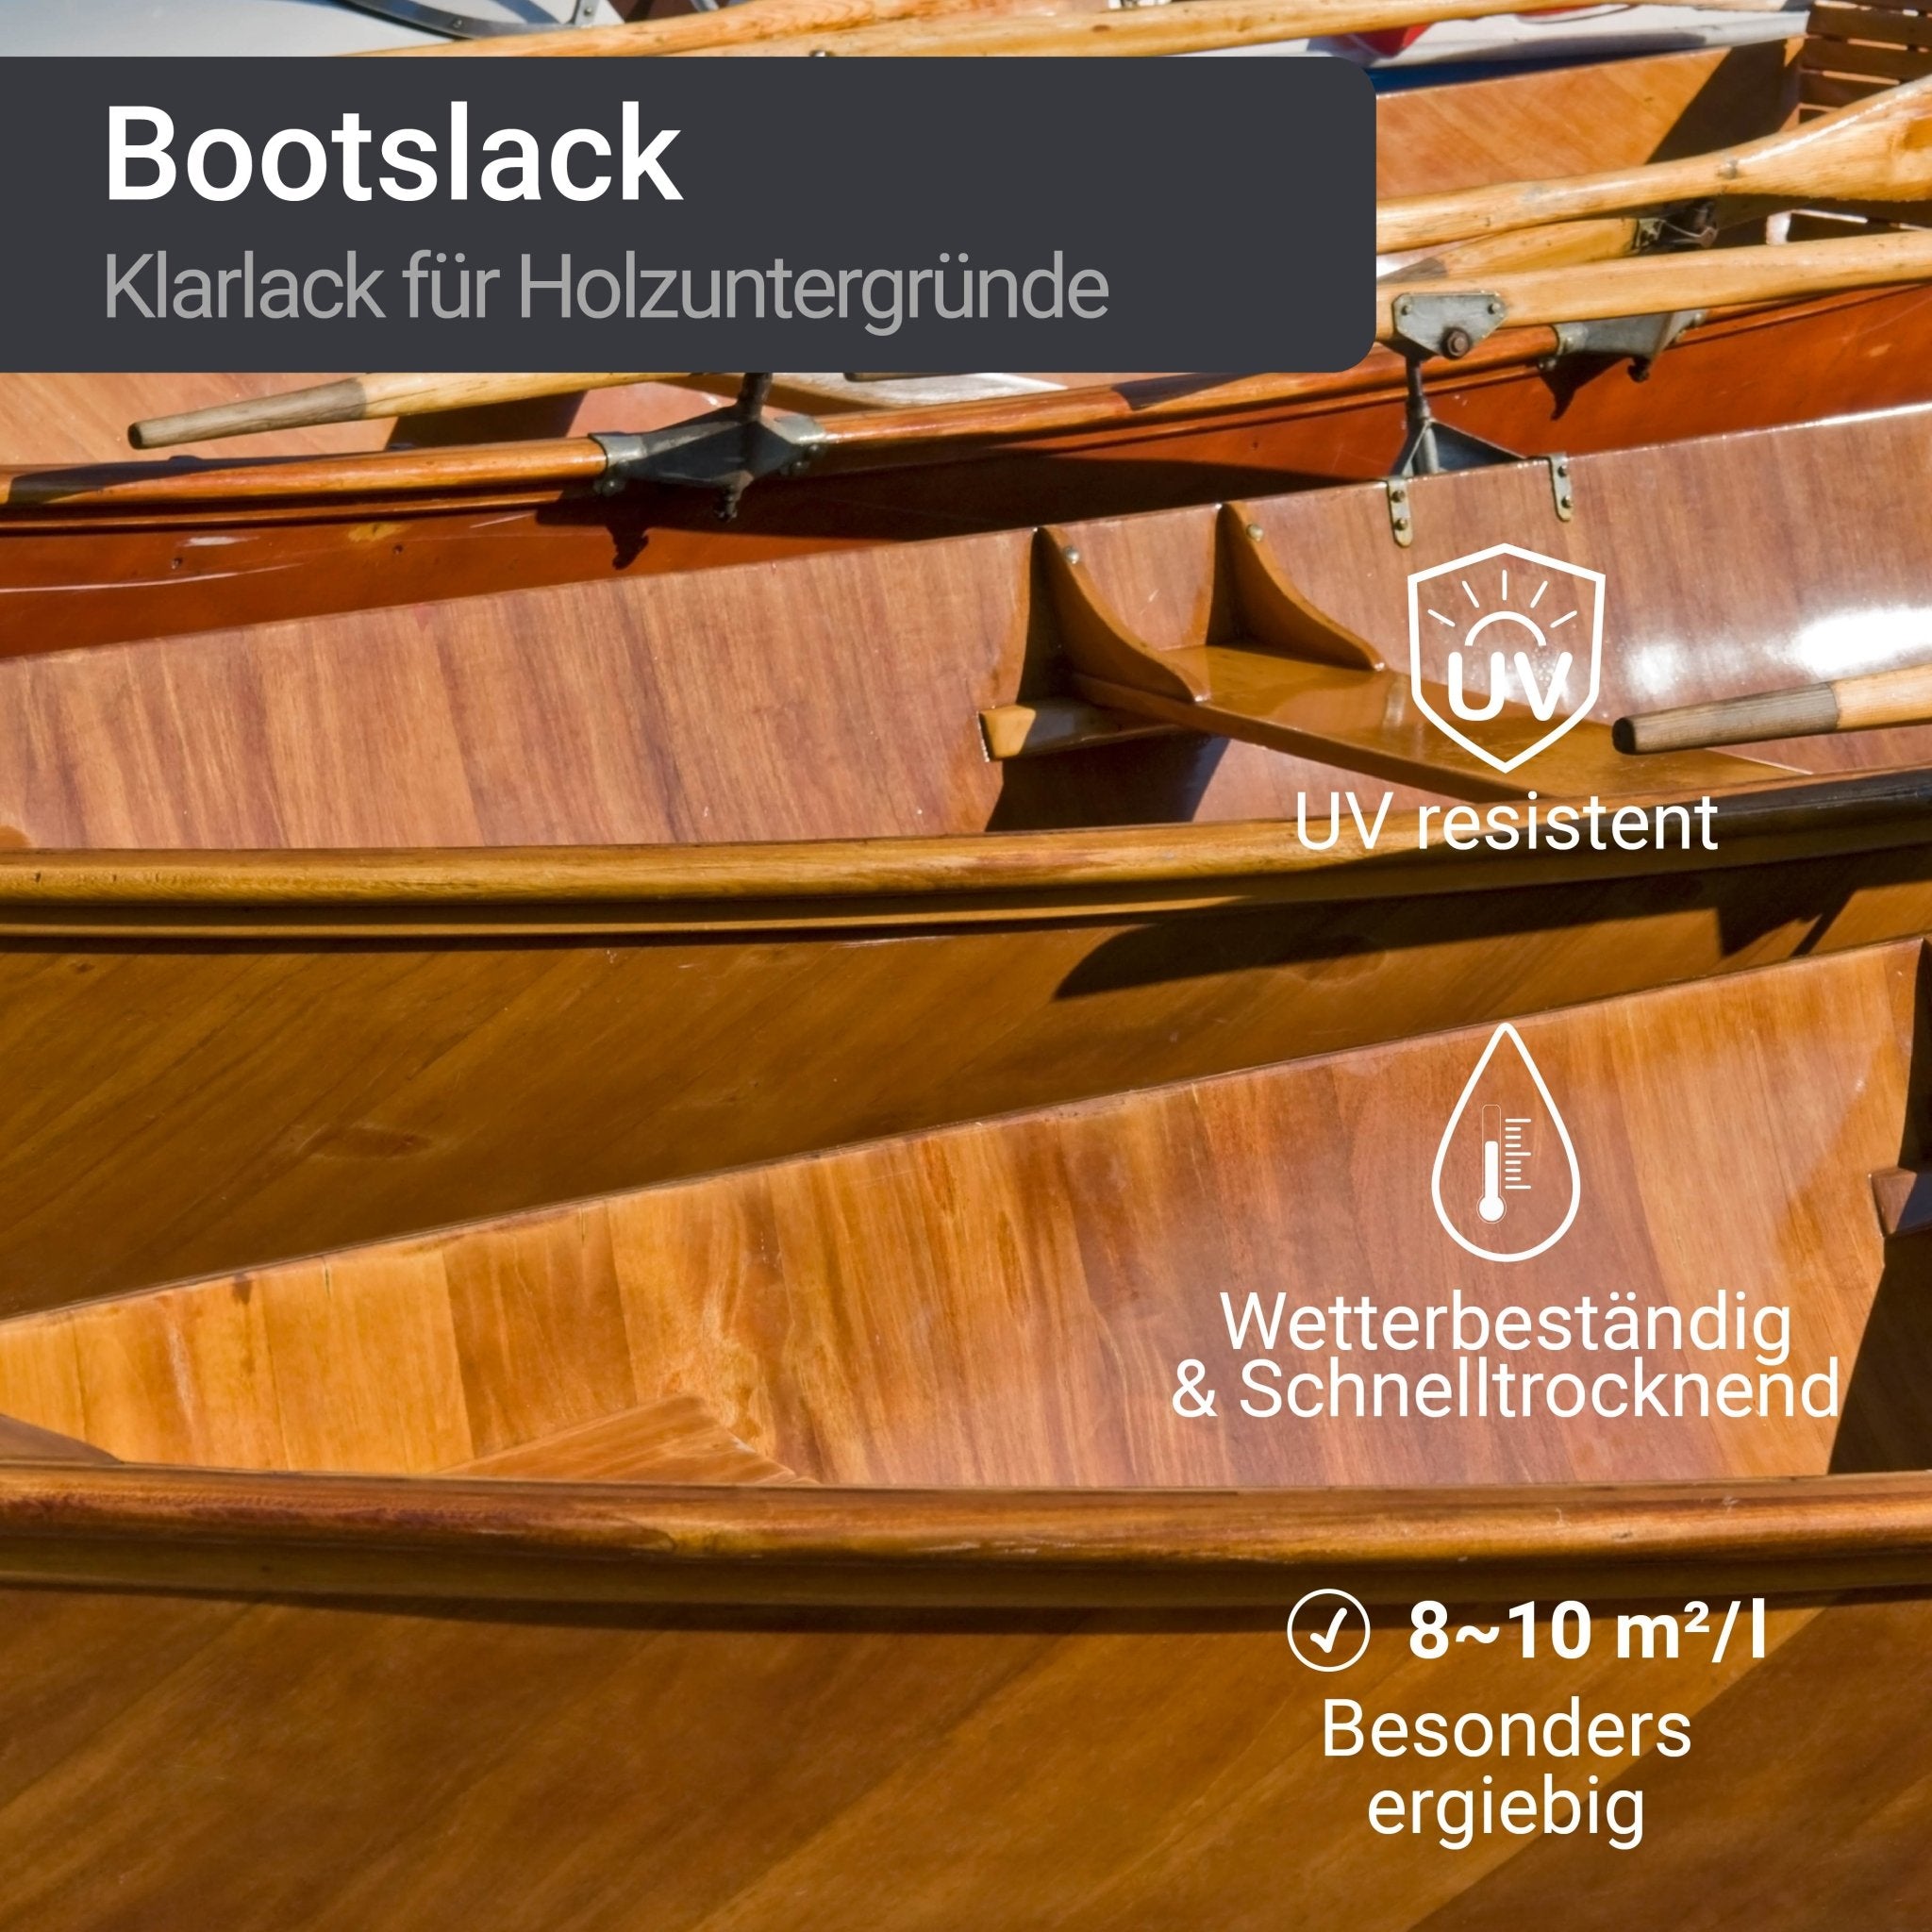 Vernice per barche in legno, nave, flatting, imbarcazioni satinata lucida W400 1-10L